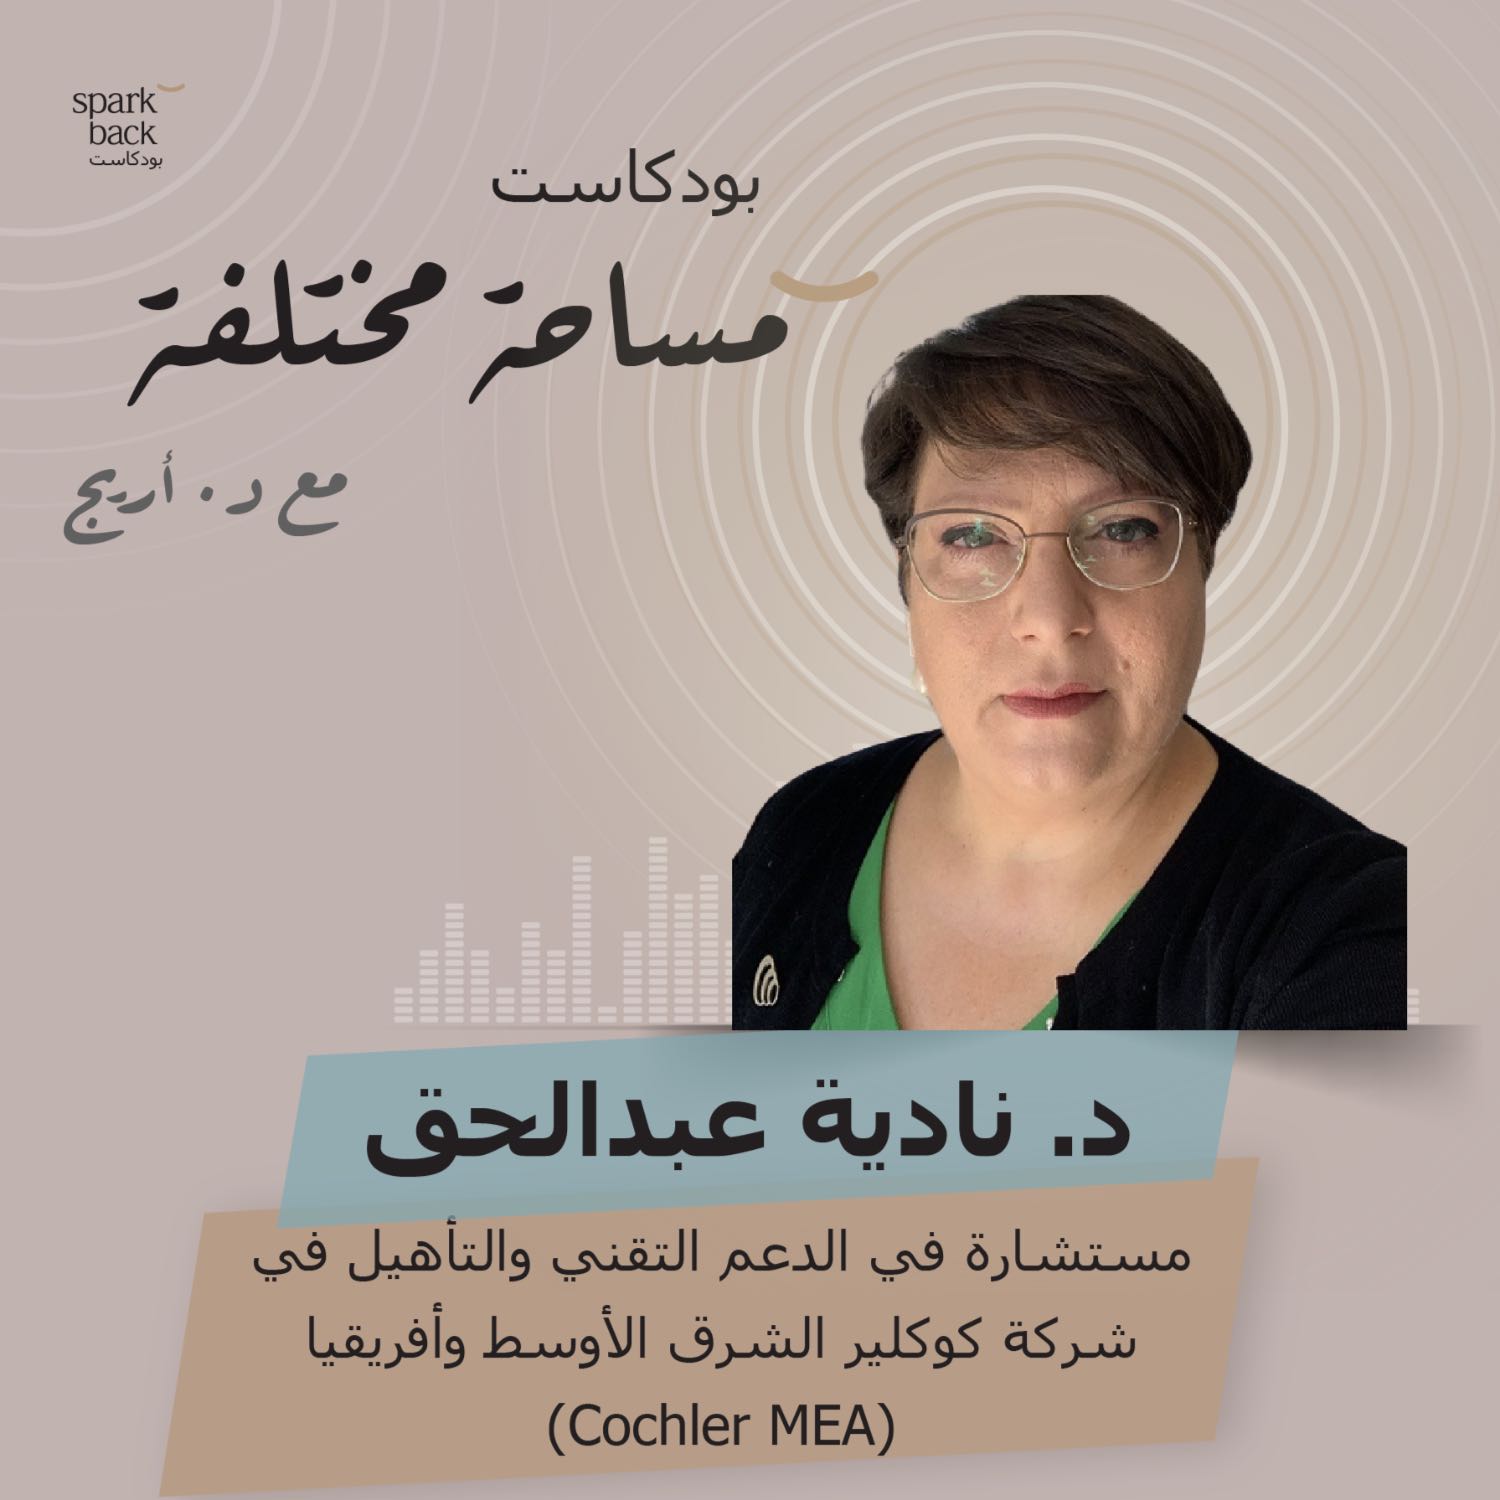 الحلقة الحادية عشر: دكتورة نادية عبدالحق